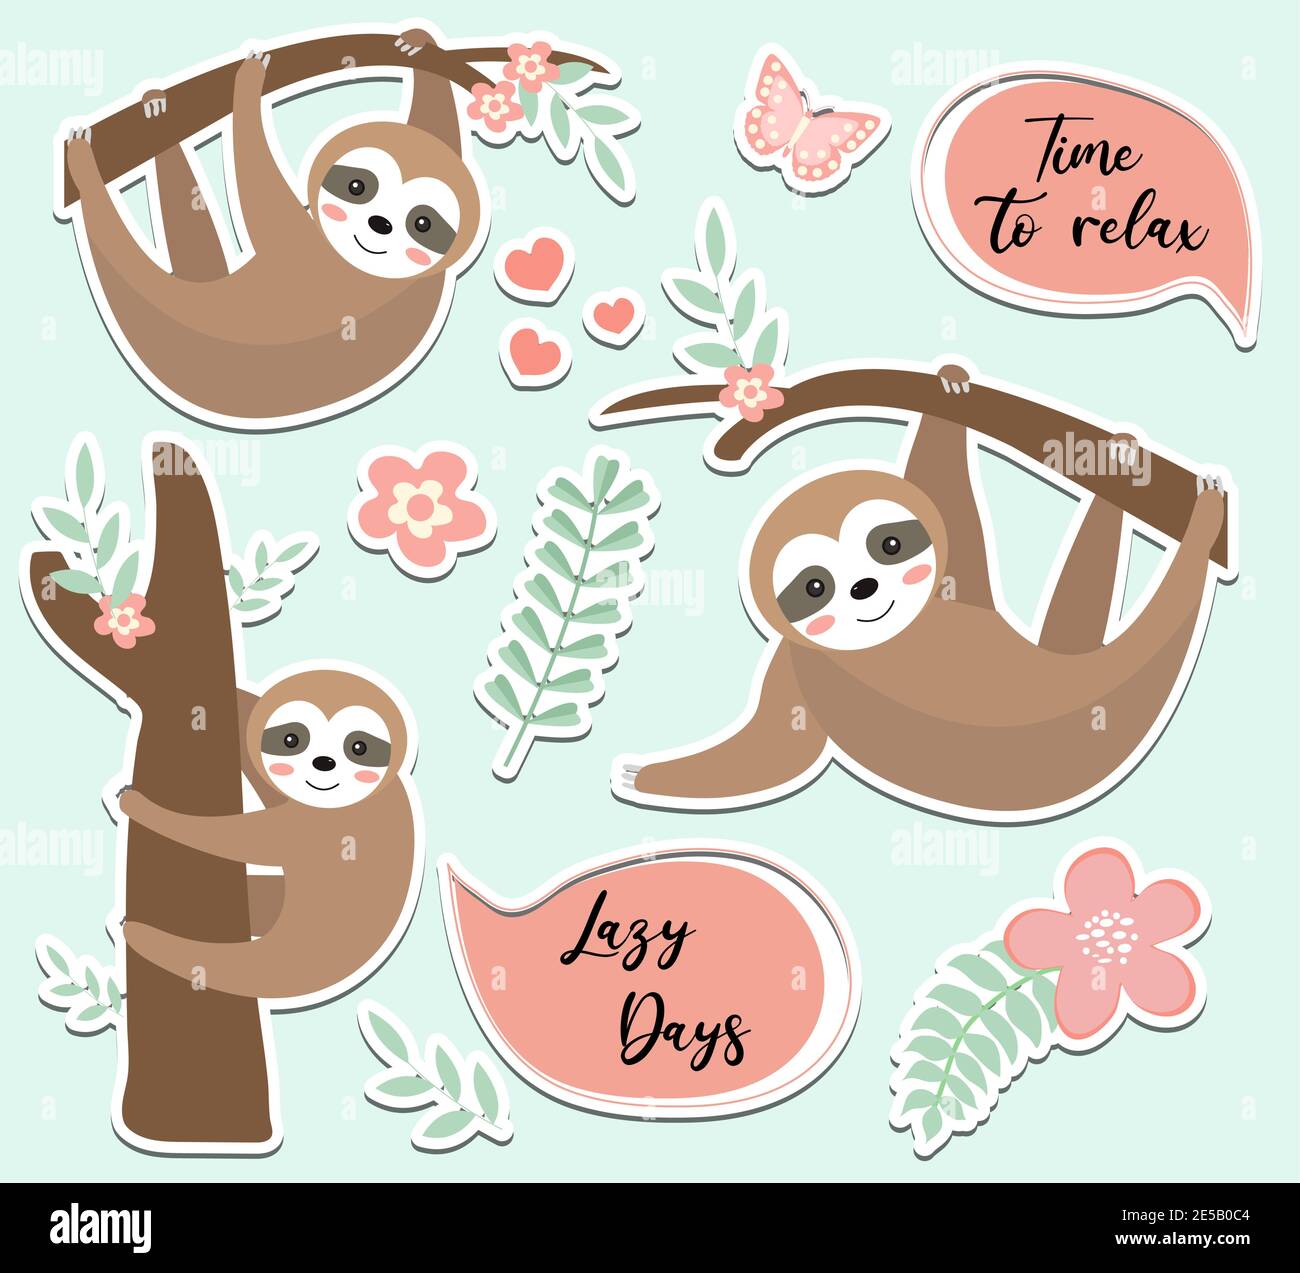 Carino set di adesivi sloth. Collezione di elementi di design con alberi, piante, fiori. Bambini baby clip art divertente sorridente animale foresta, adesivo. Vettore Illustrazione Vettoriale